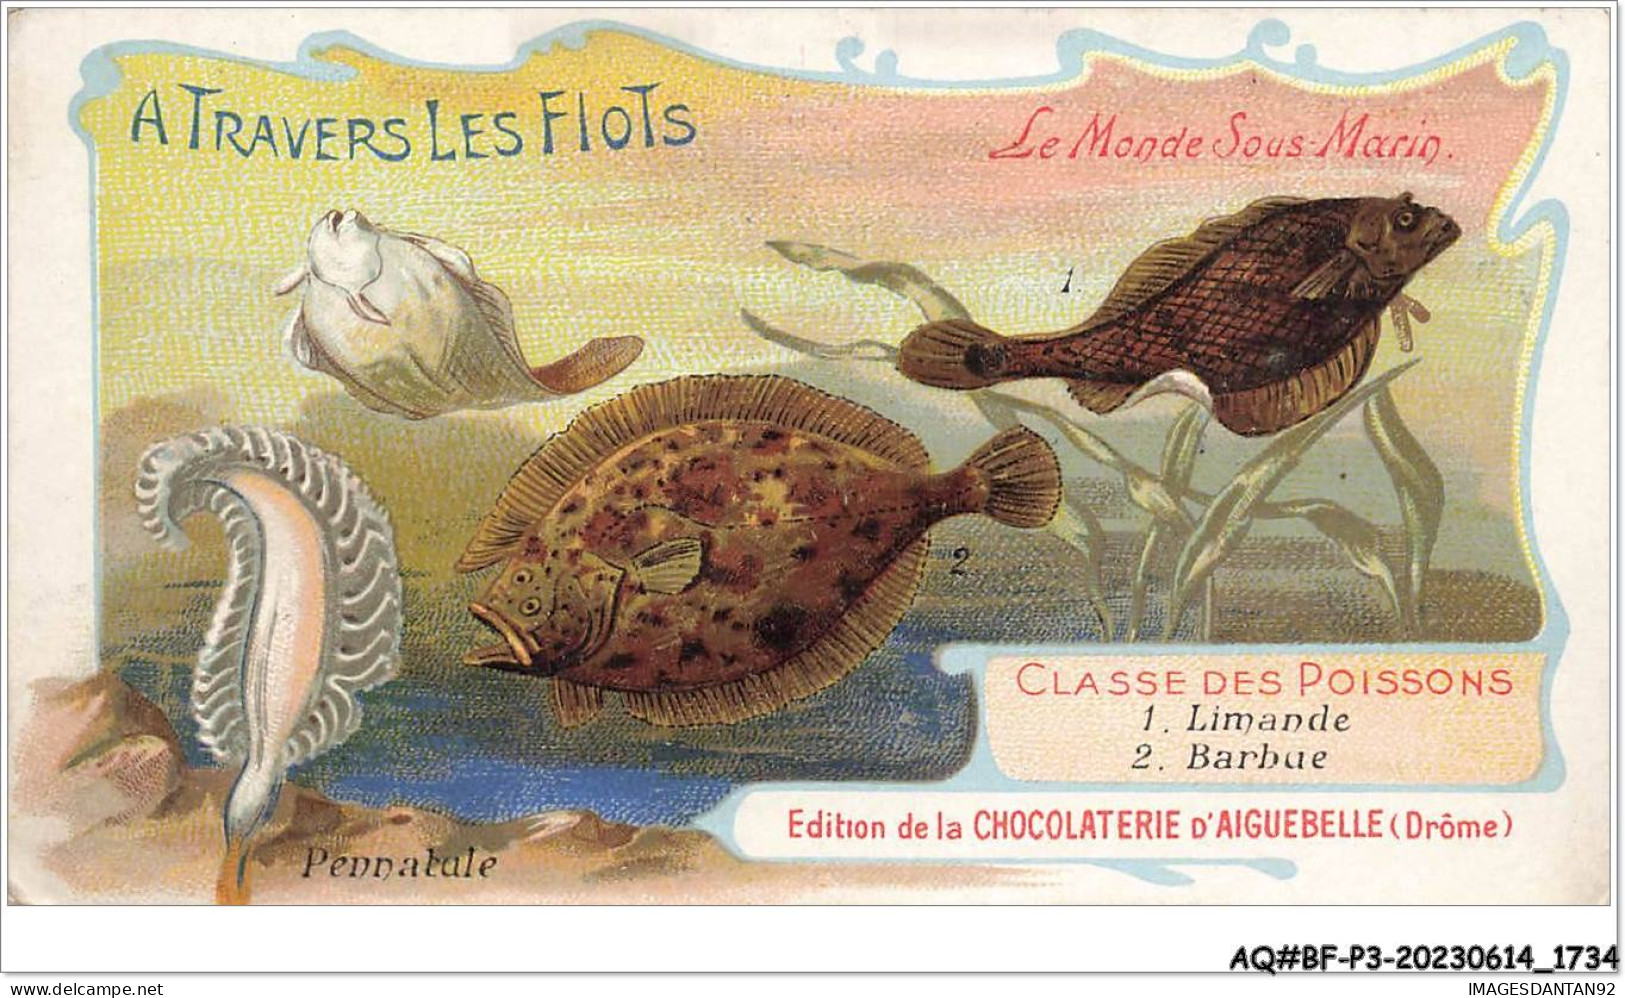 AQ#BFP3-CHROMOS-0865 - CHOCOLAT D'AIGUEBELLE - Le Monde Sous-marin - Limande - Barbue - Aiguebelle